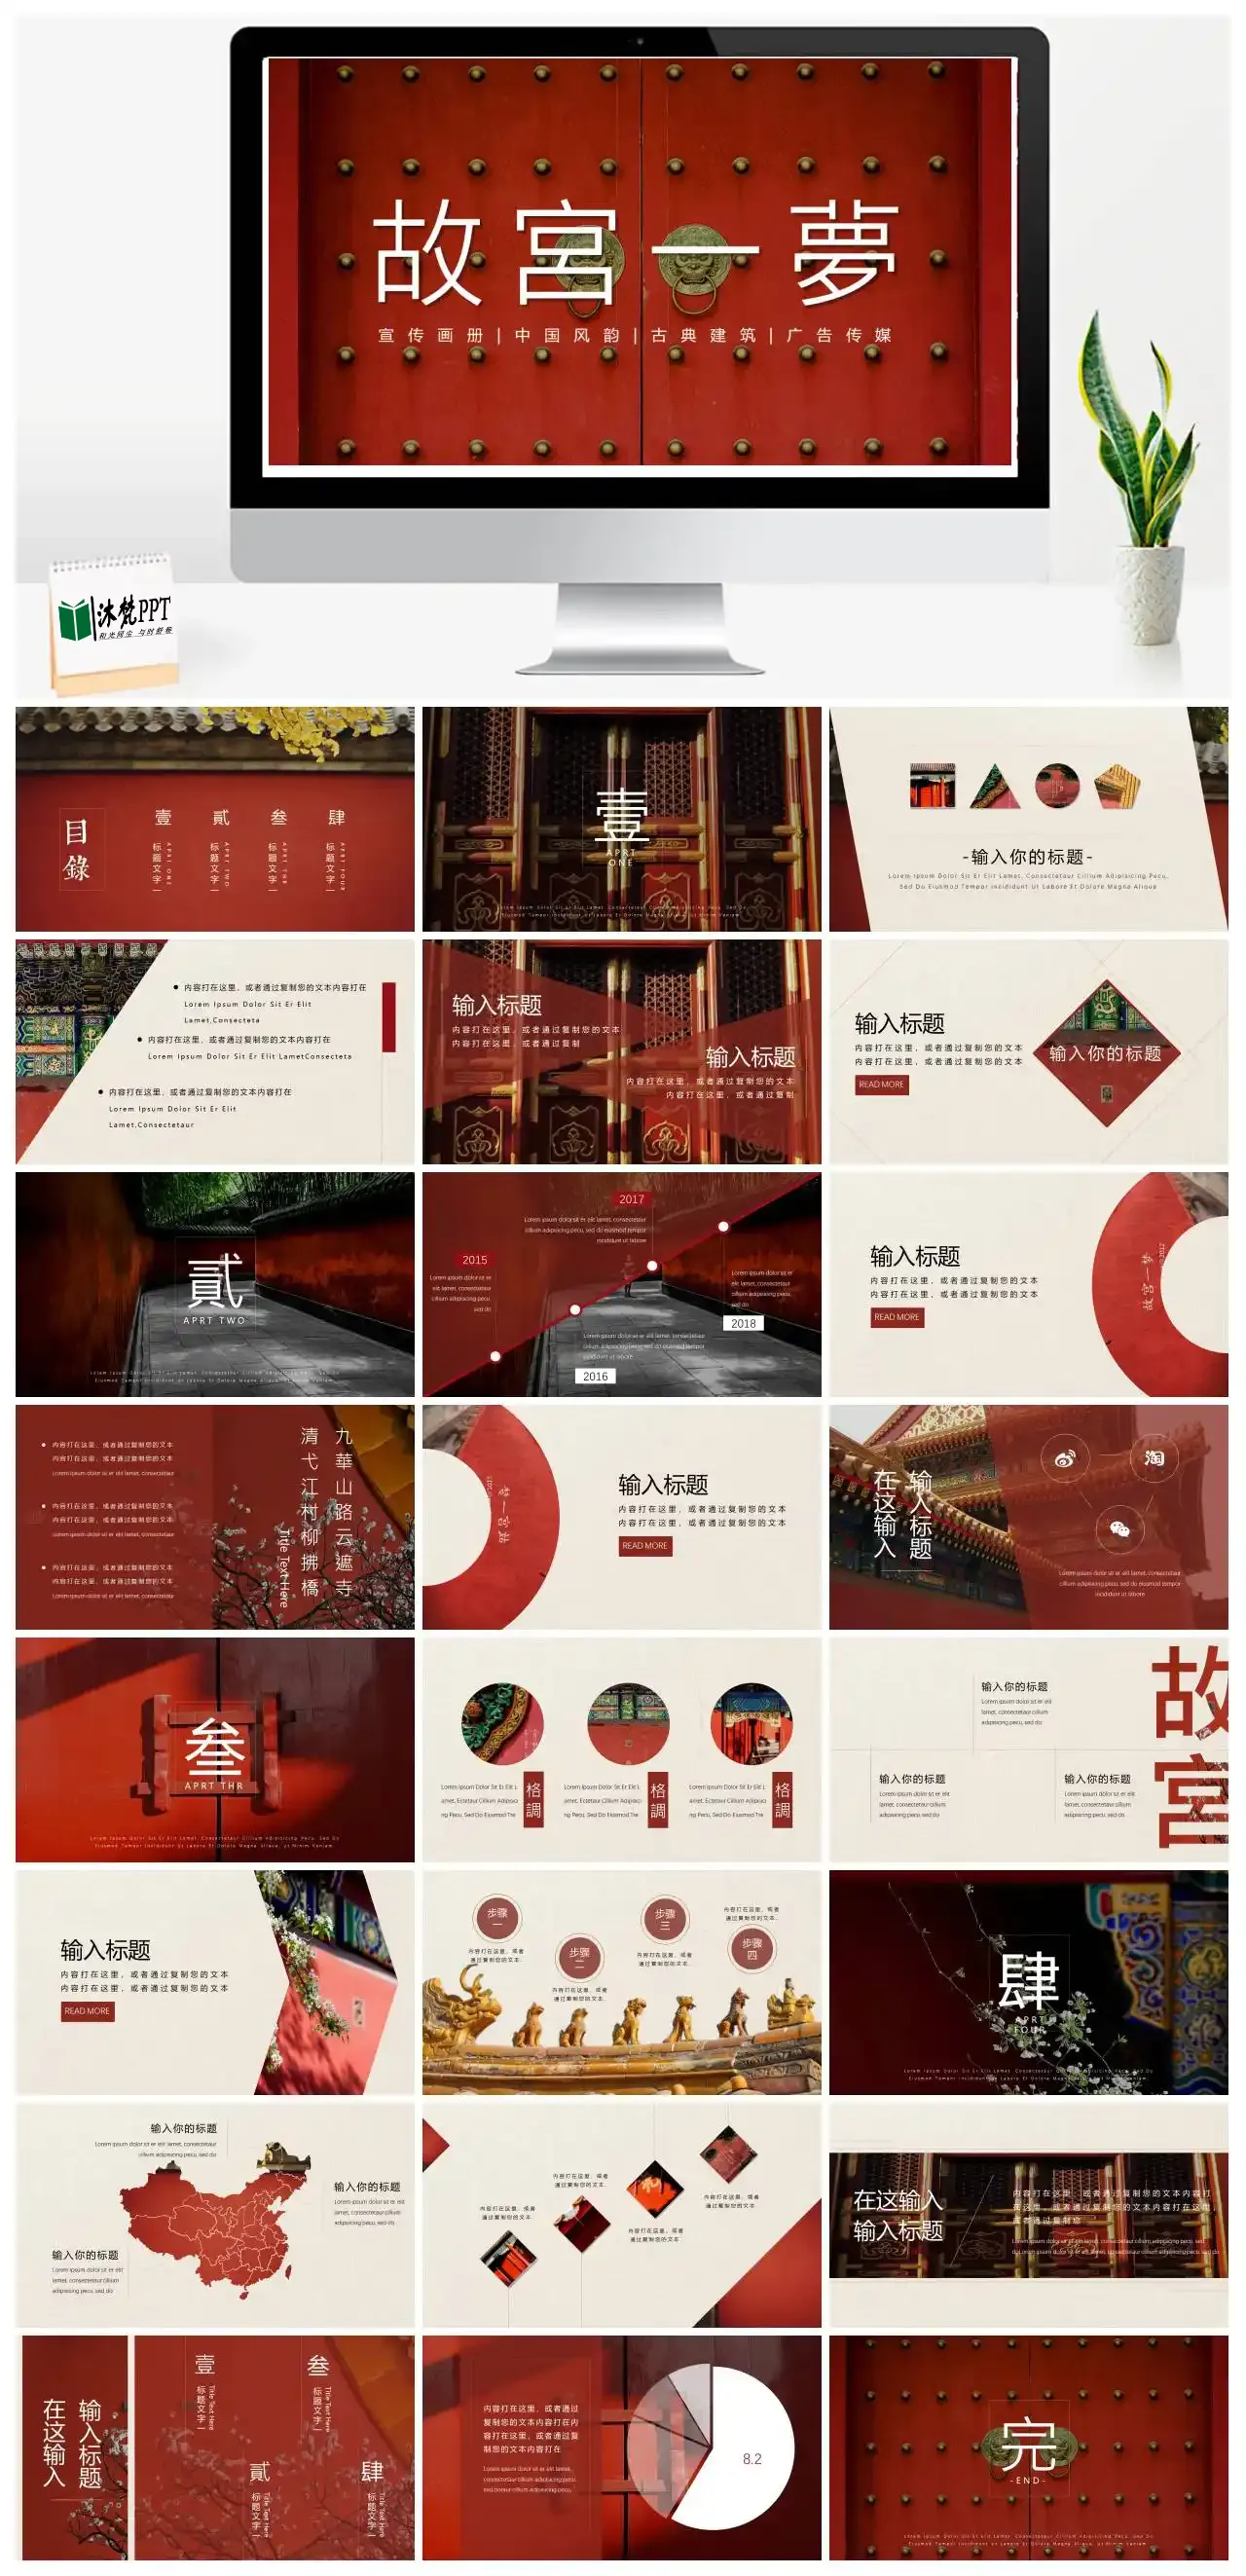 【0023】中国风宣传画册风韵古典建筑广告传媒PPT模板